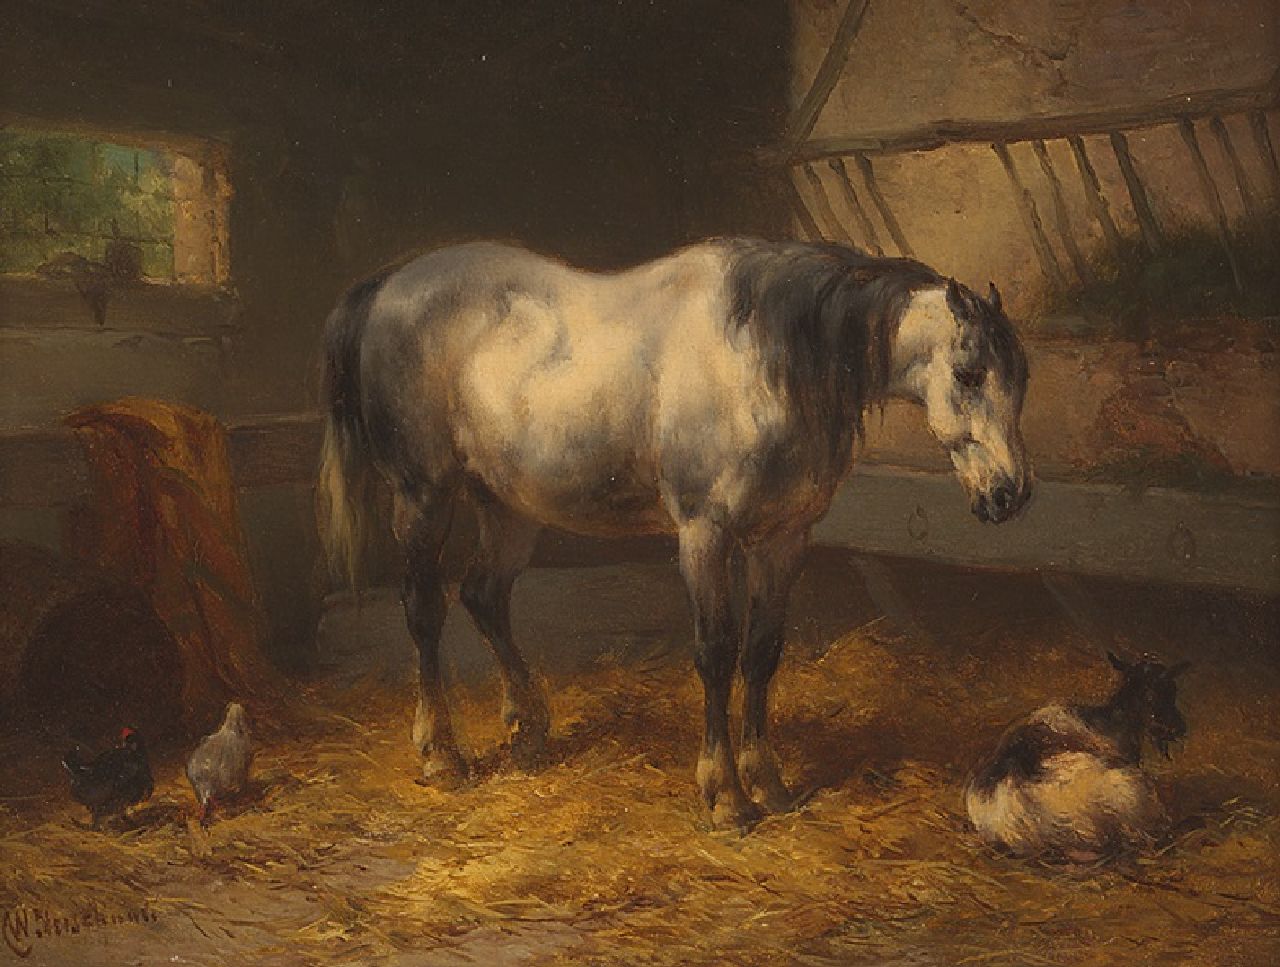 Verschuur W.  | Wouterus Verschuur, Rustend paard in een stal, olieverf op paneel 15,1 x 20,5 cm, gesigneerd linksonder